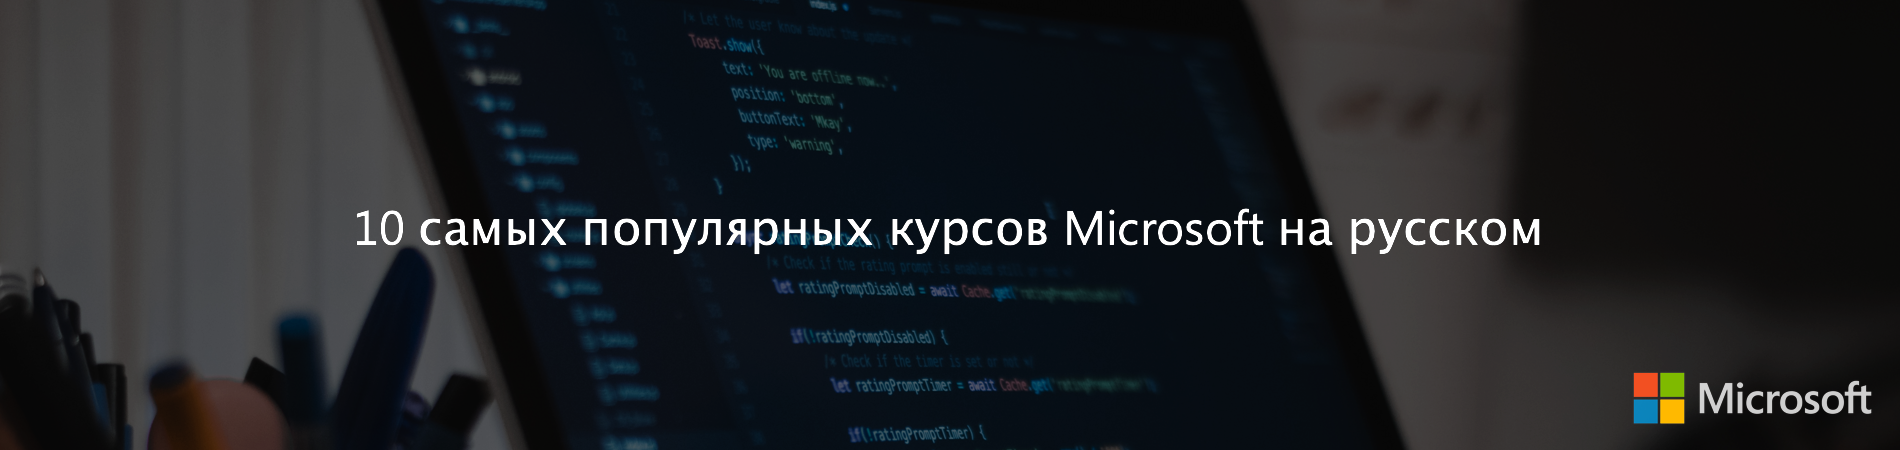 10 самых популярных курсов Microsoft на русском - 1